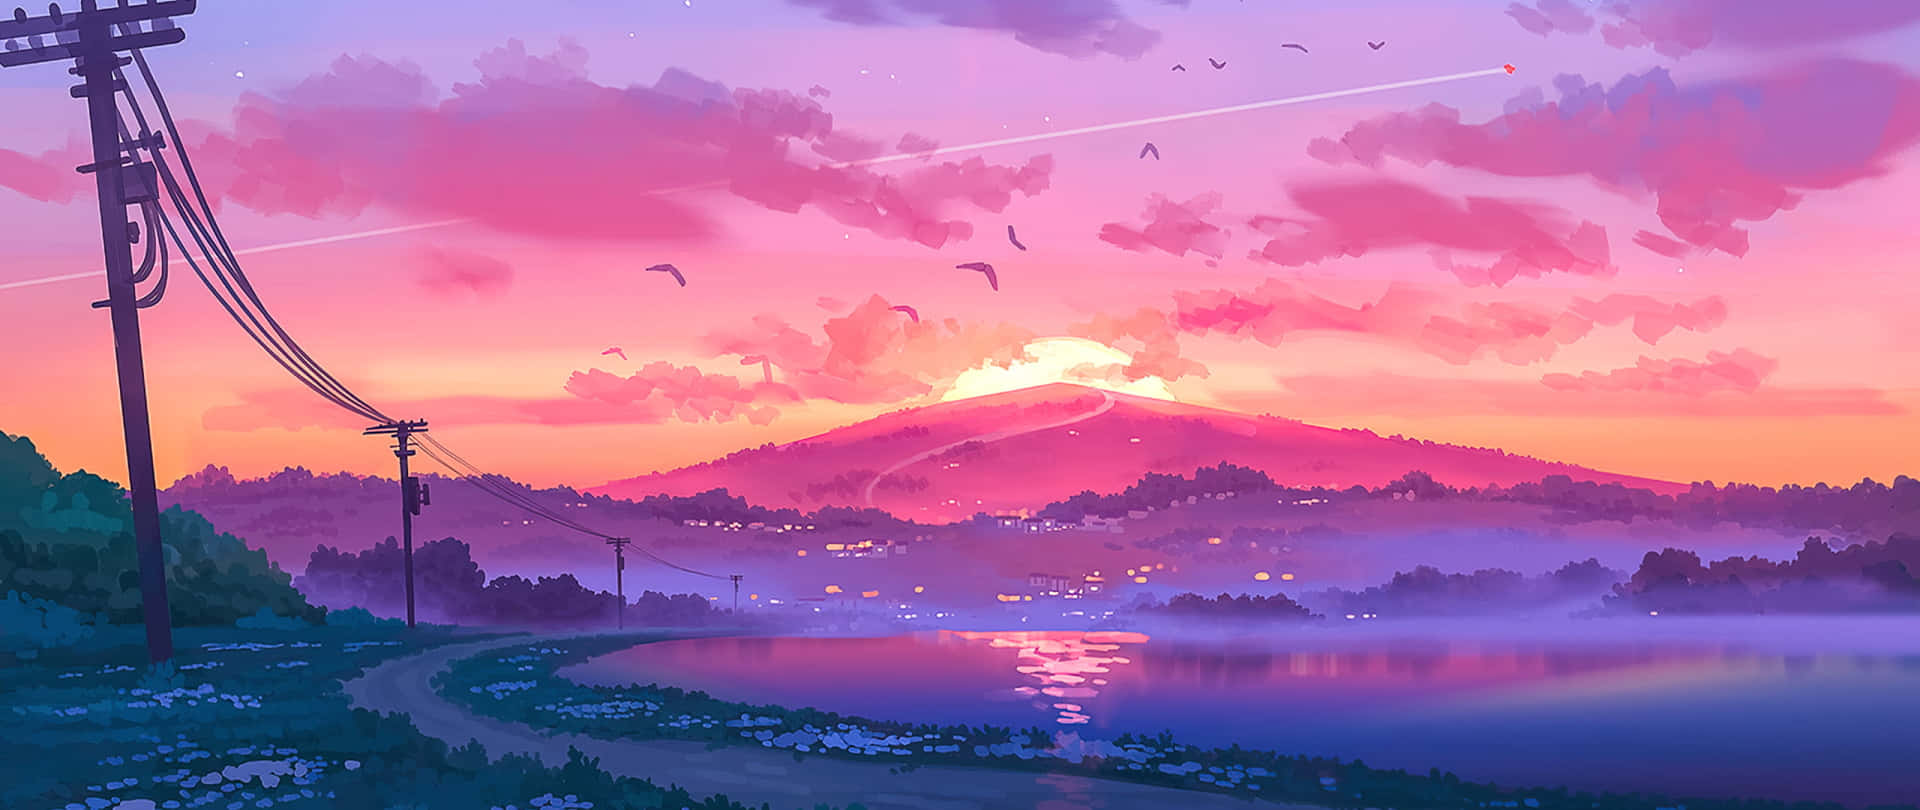 Anime Sunset Aesthetic Art 2560x1080 Wallpaper